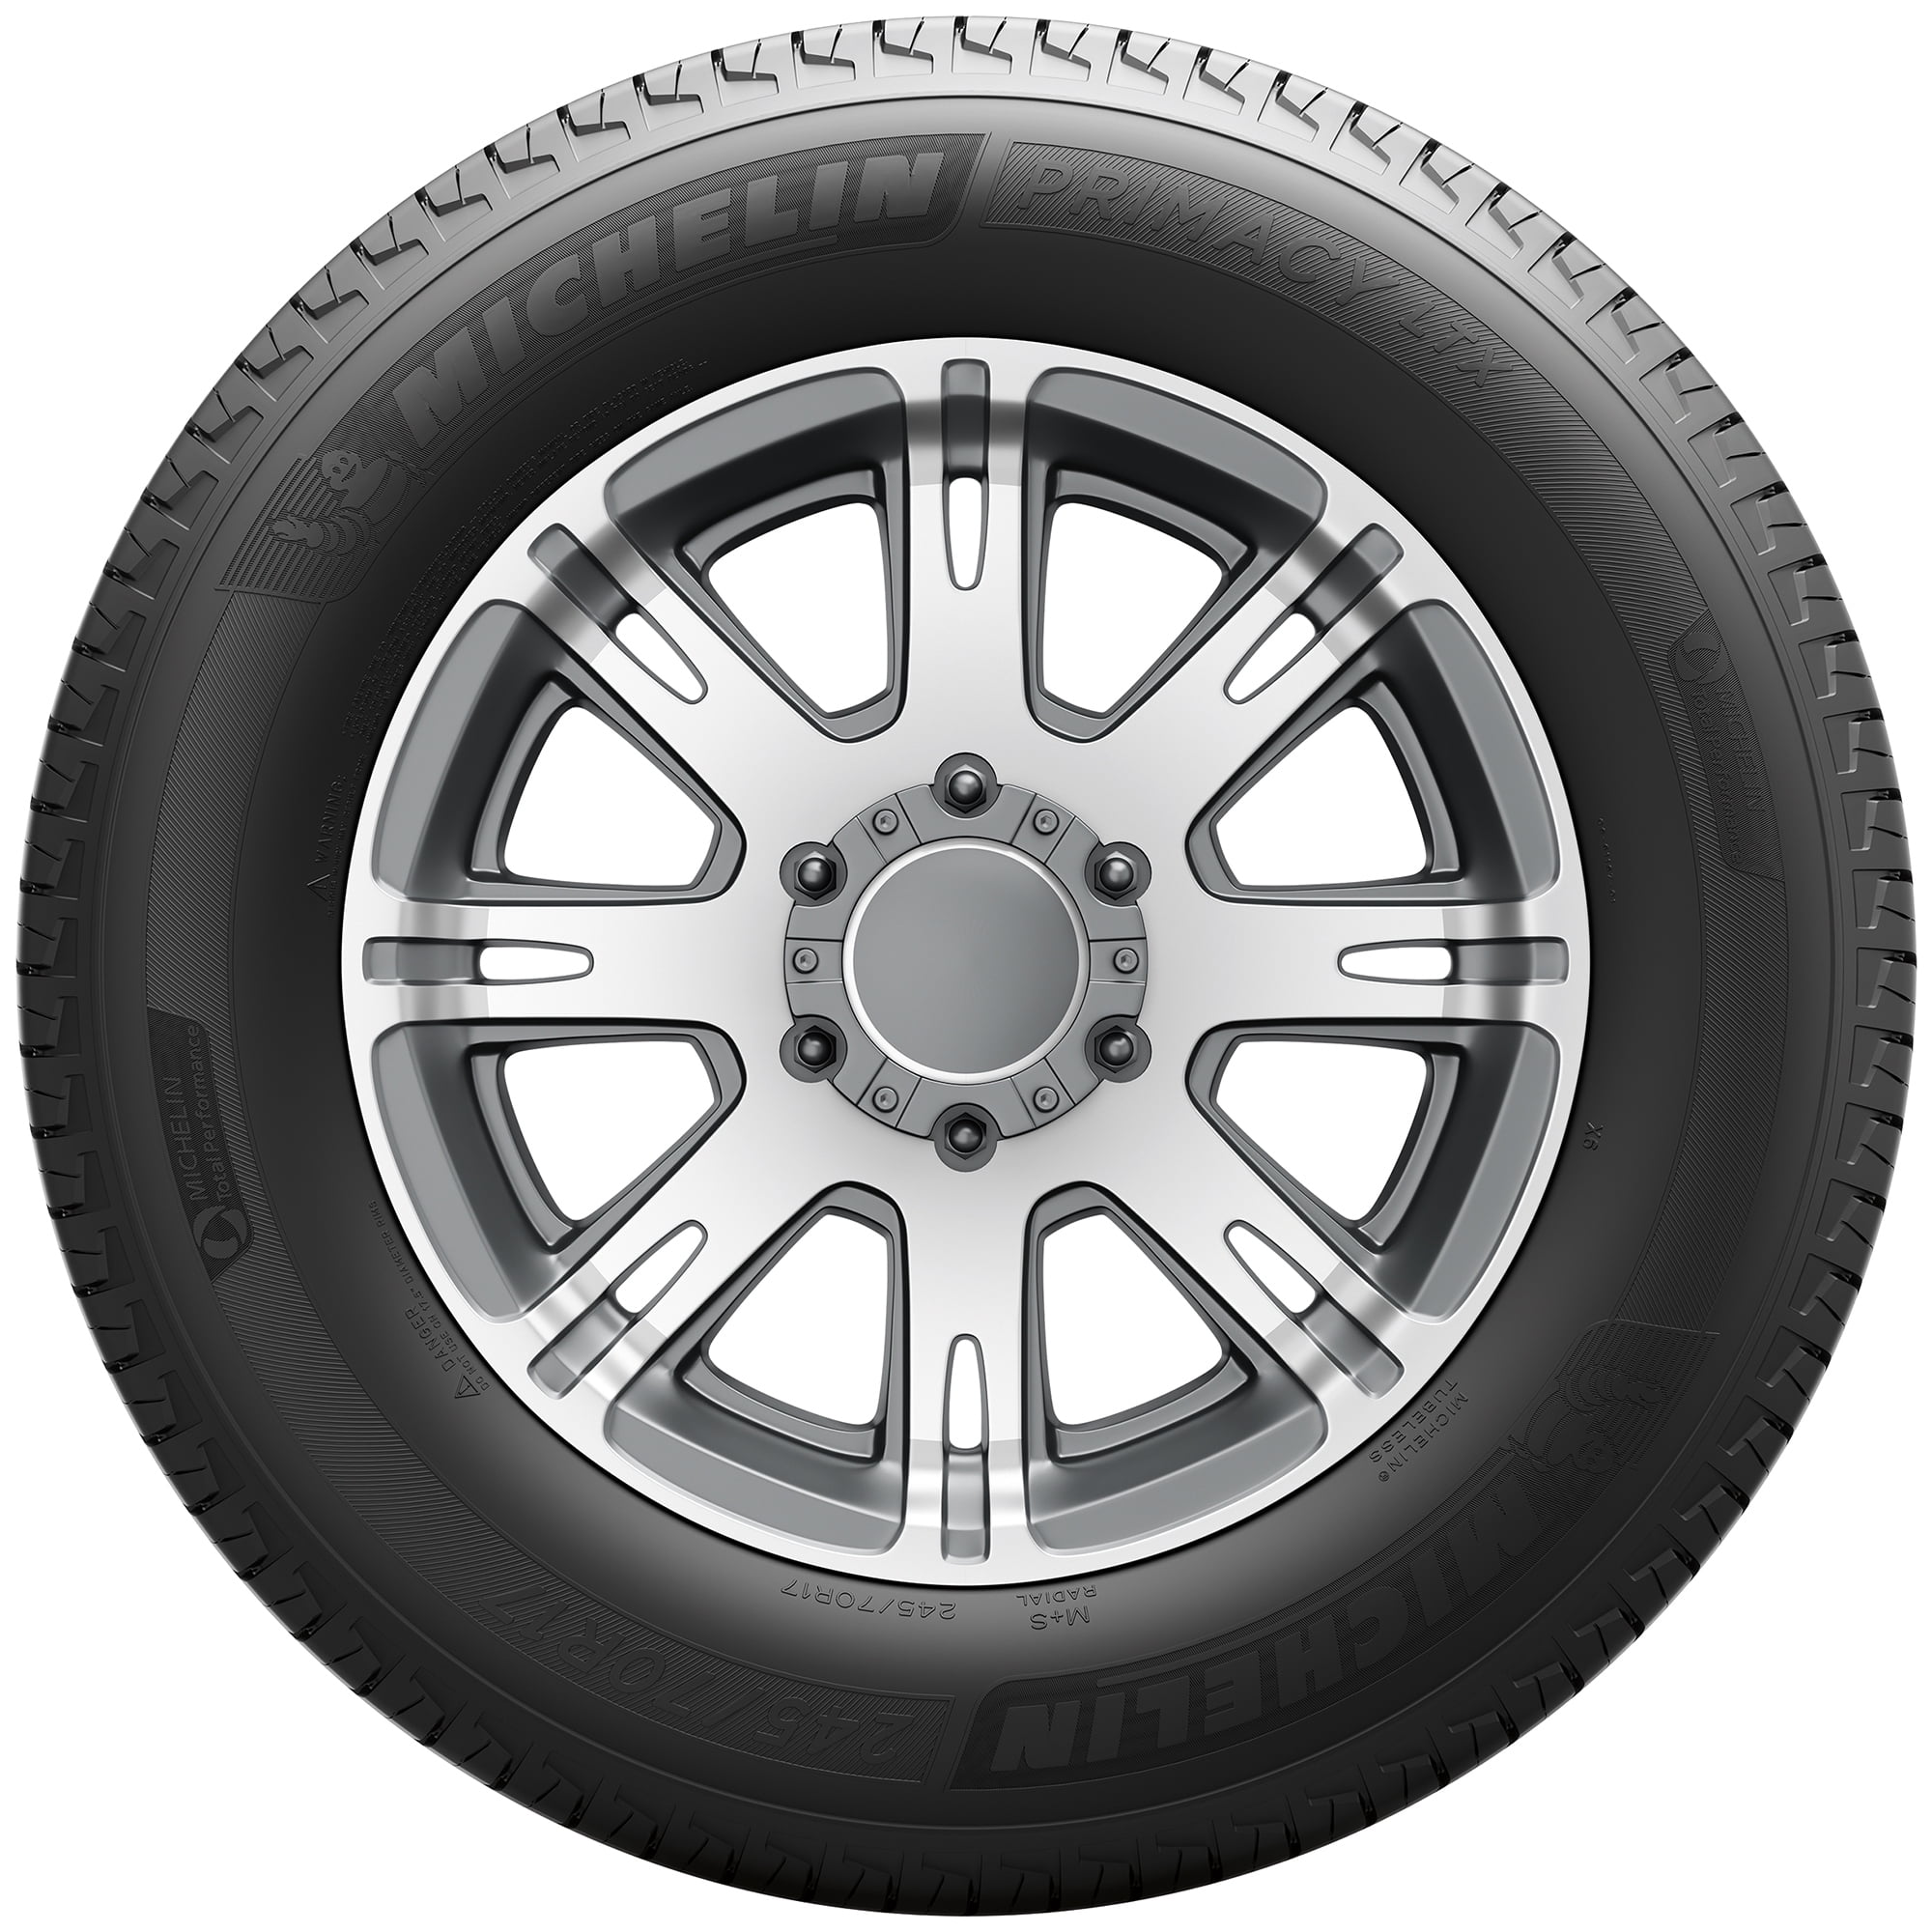 Michelin Primacy LTX All-Season 265/65R17 112T Tire - Walmart.com